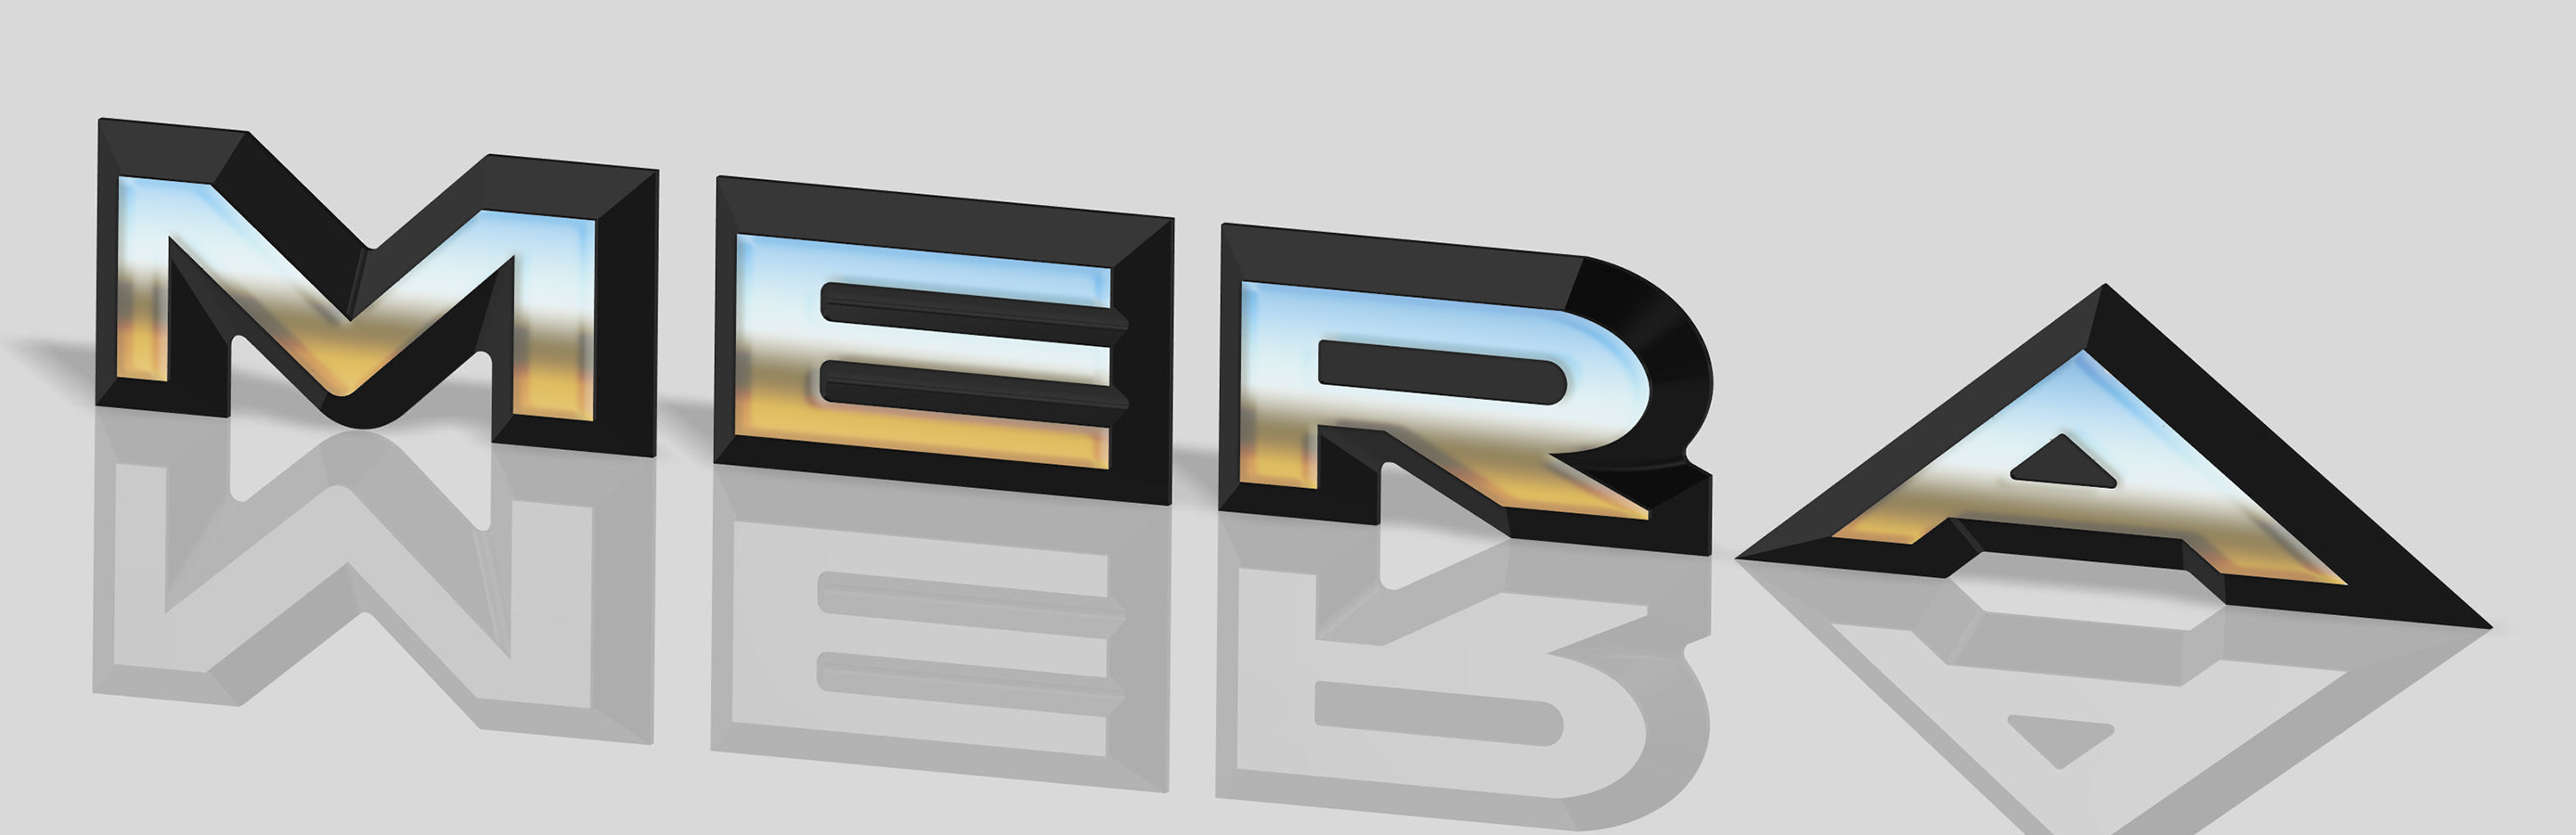 MERA Rear Deck Lid Letters